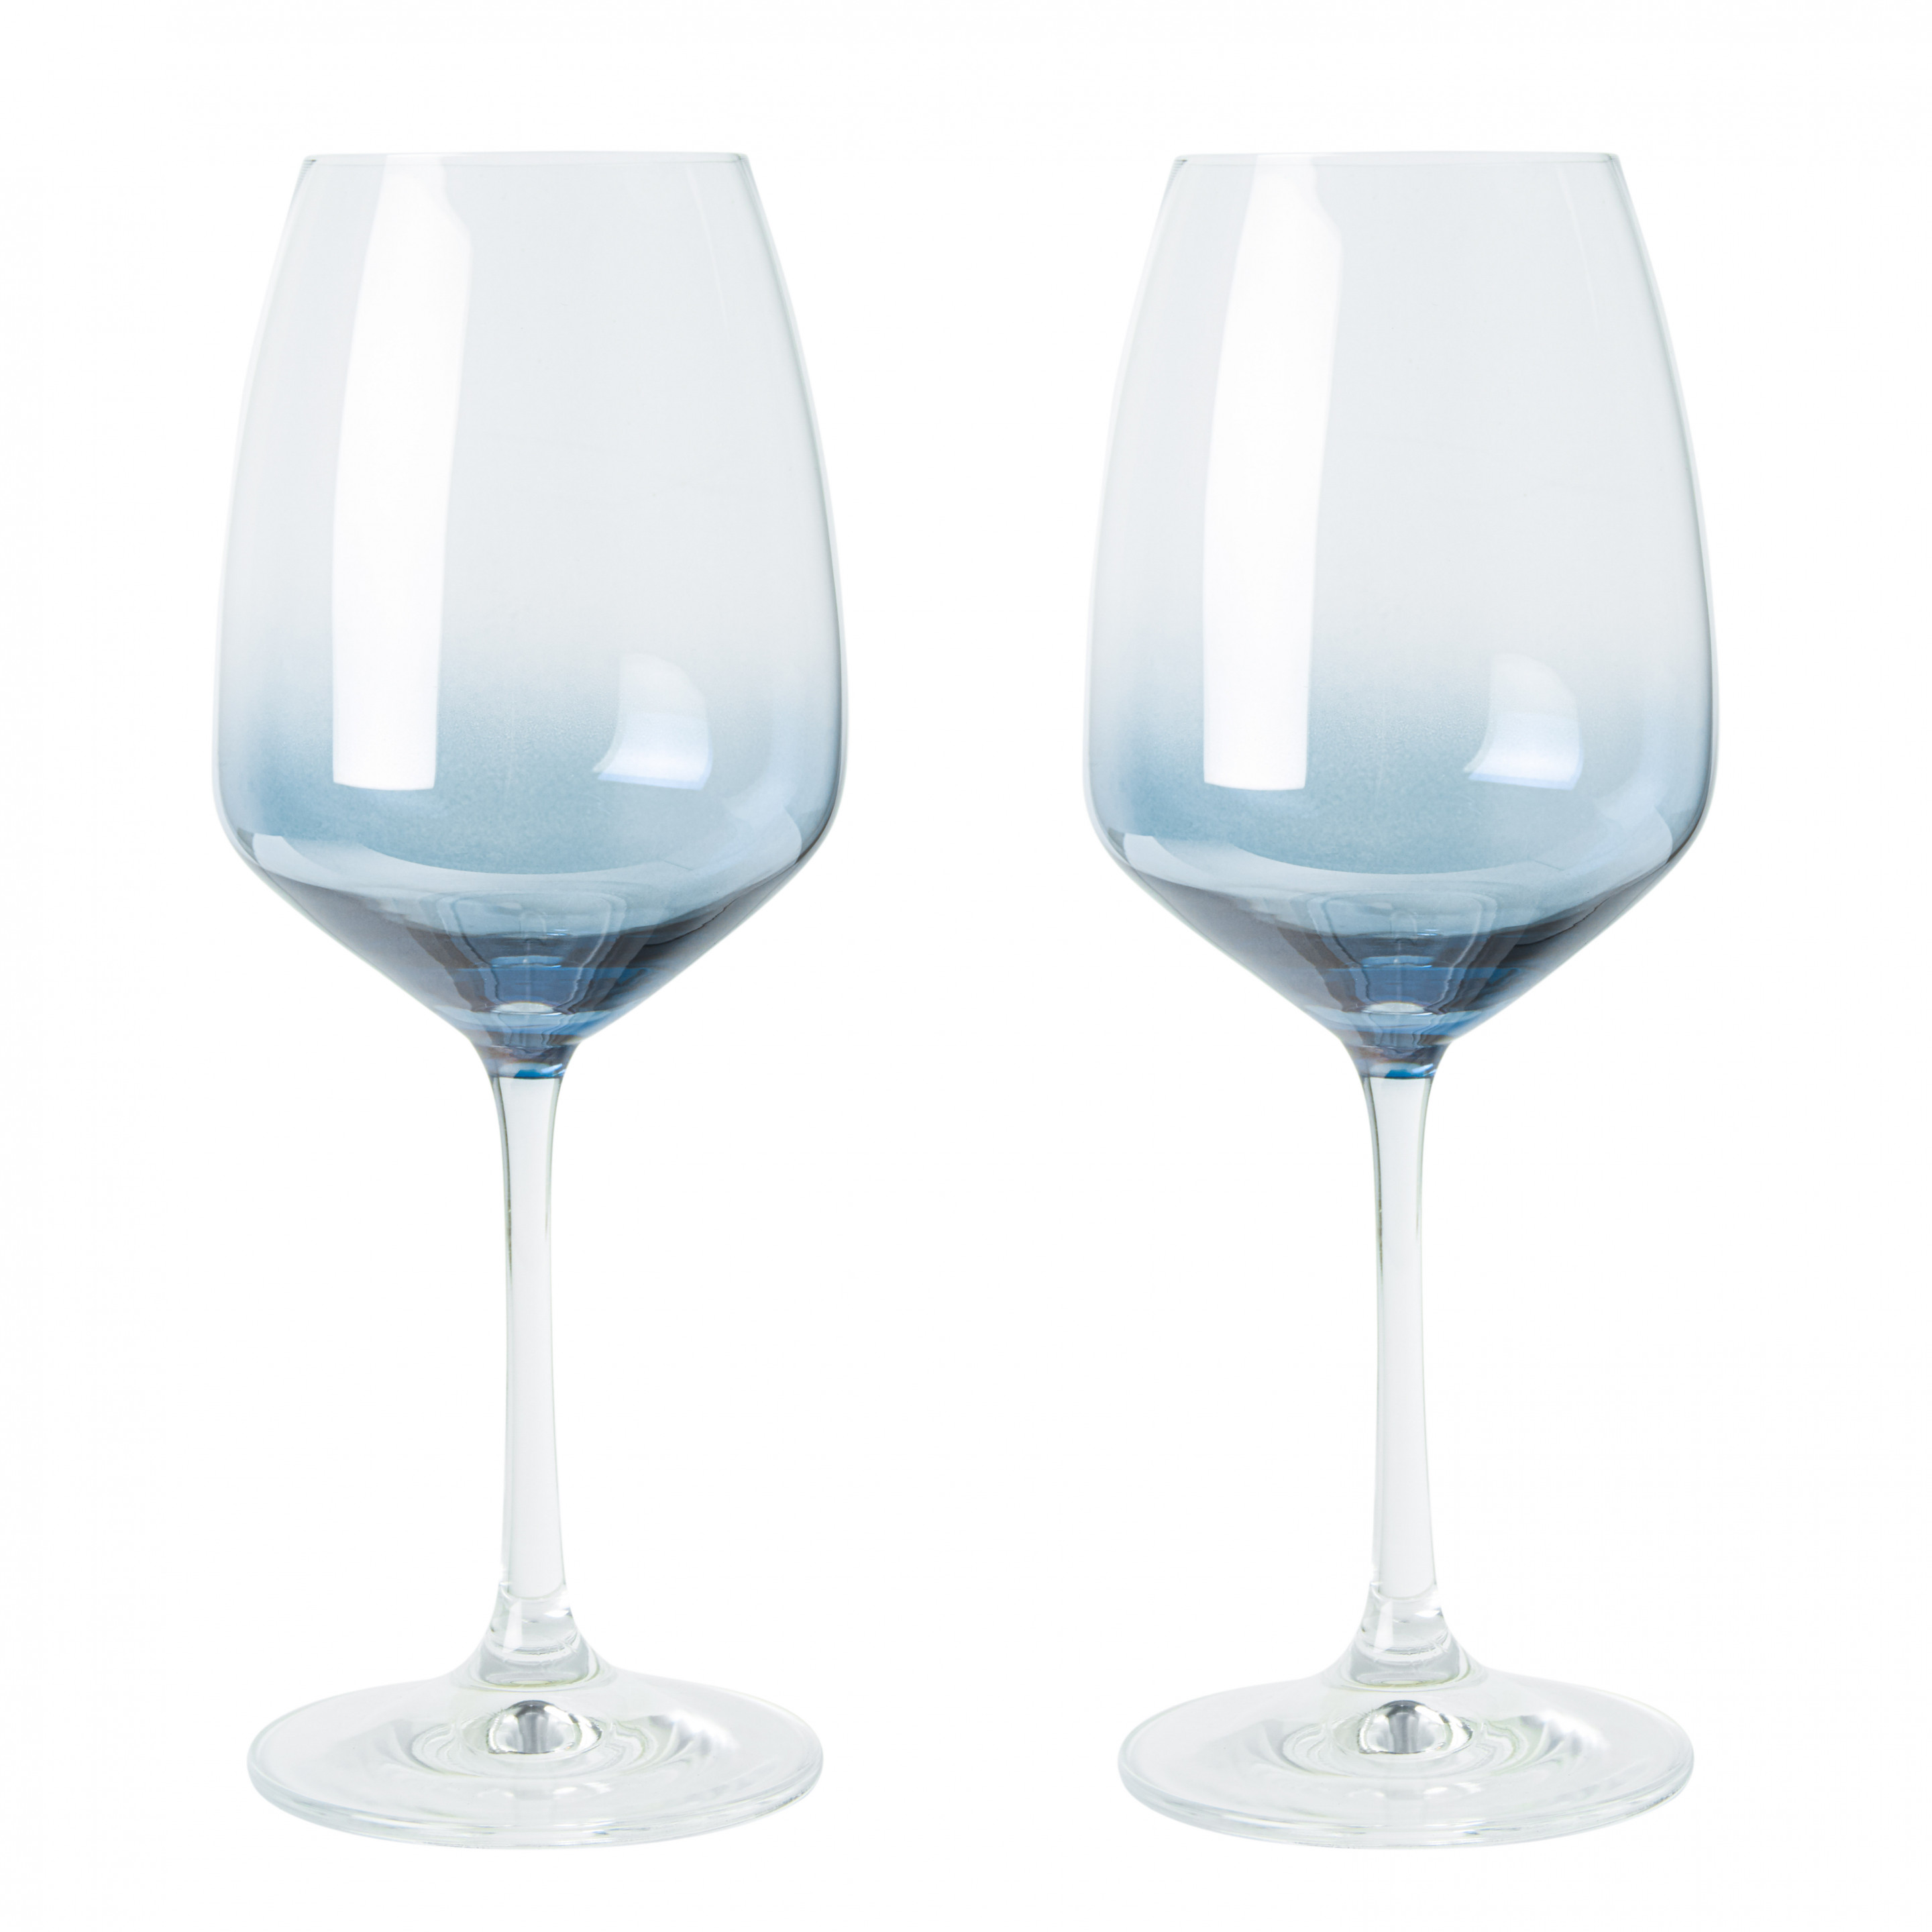 plus emotioneel Interactie Wijnglas Wit set van 2 kopen? » Heinen Delfts Blauw